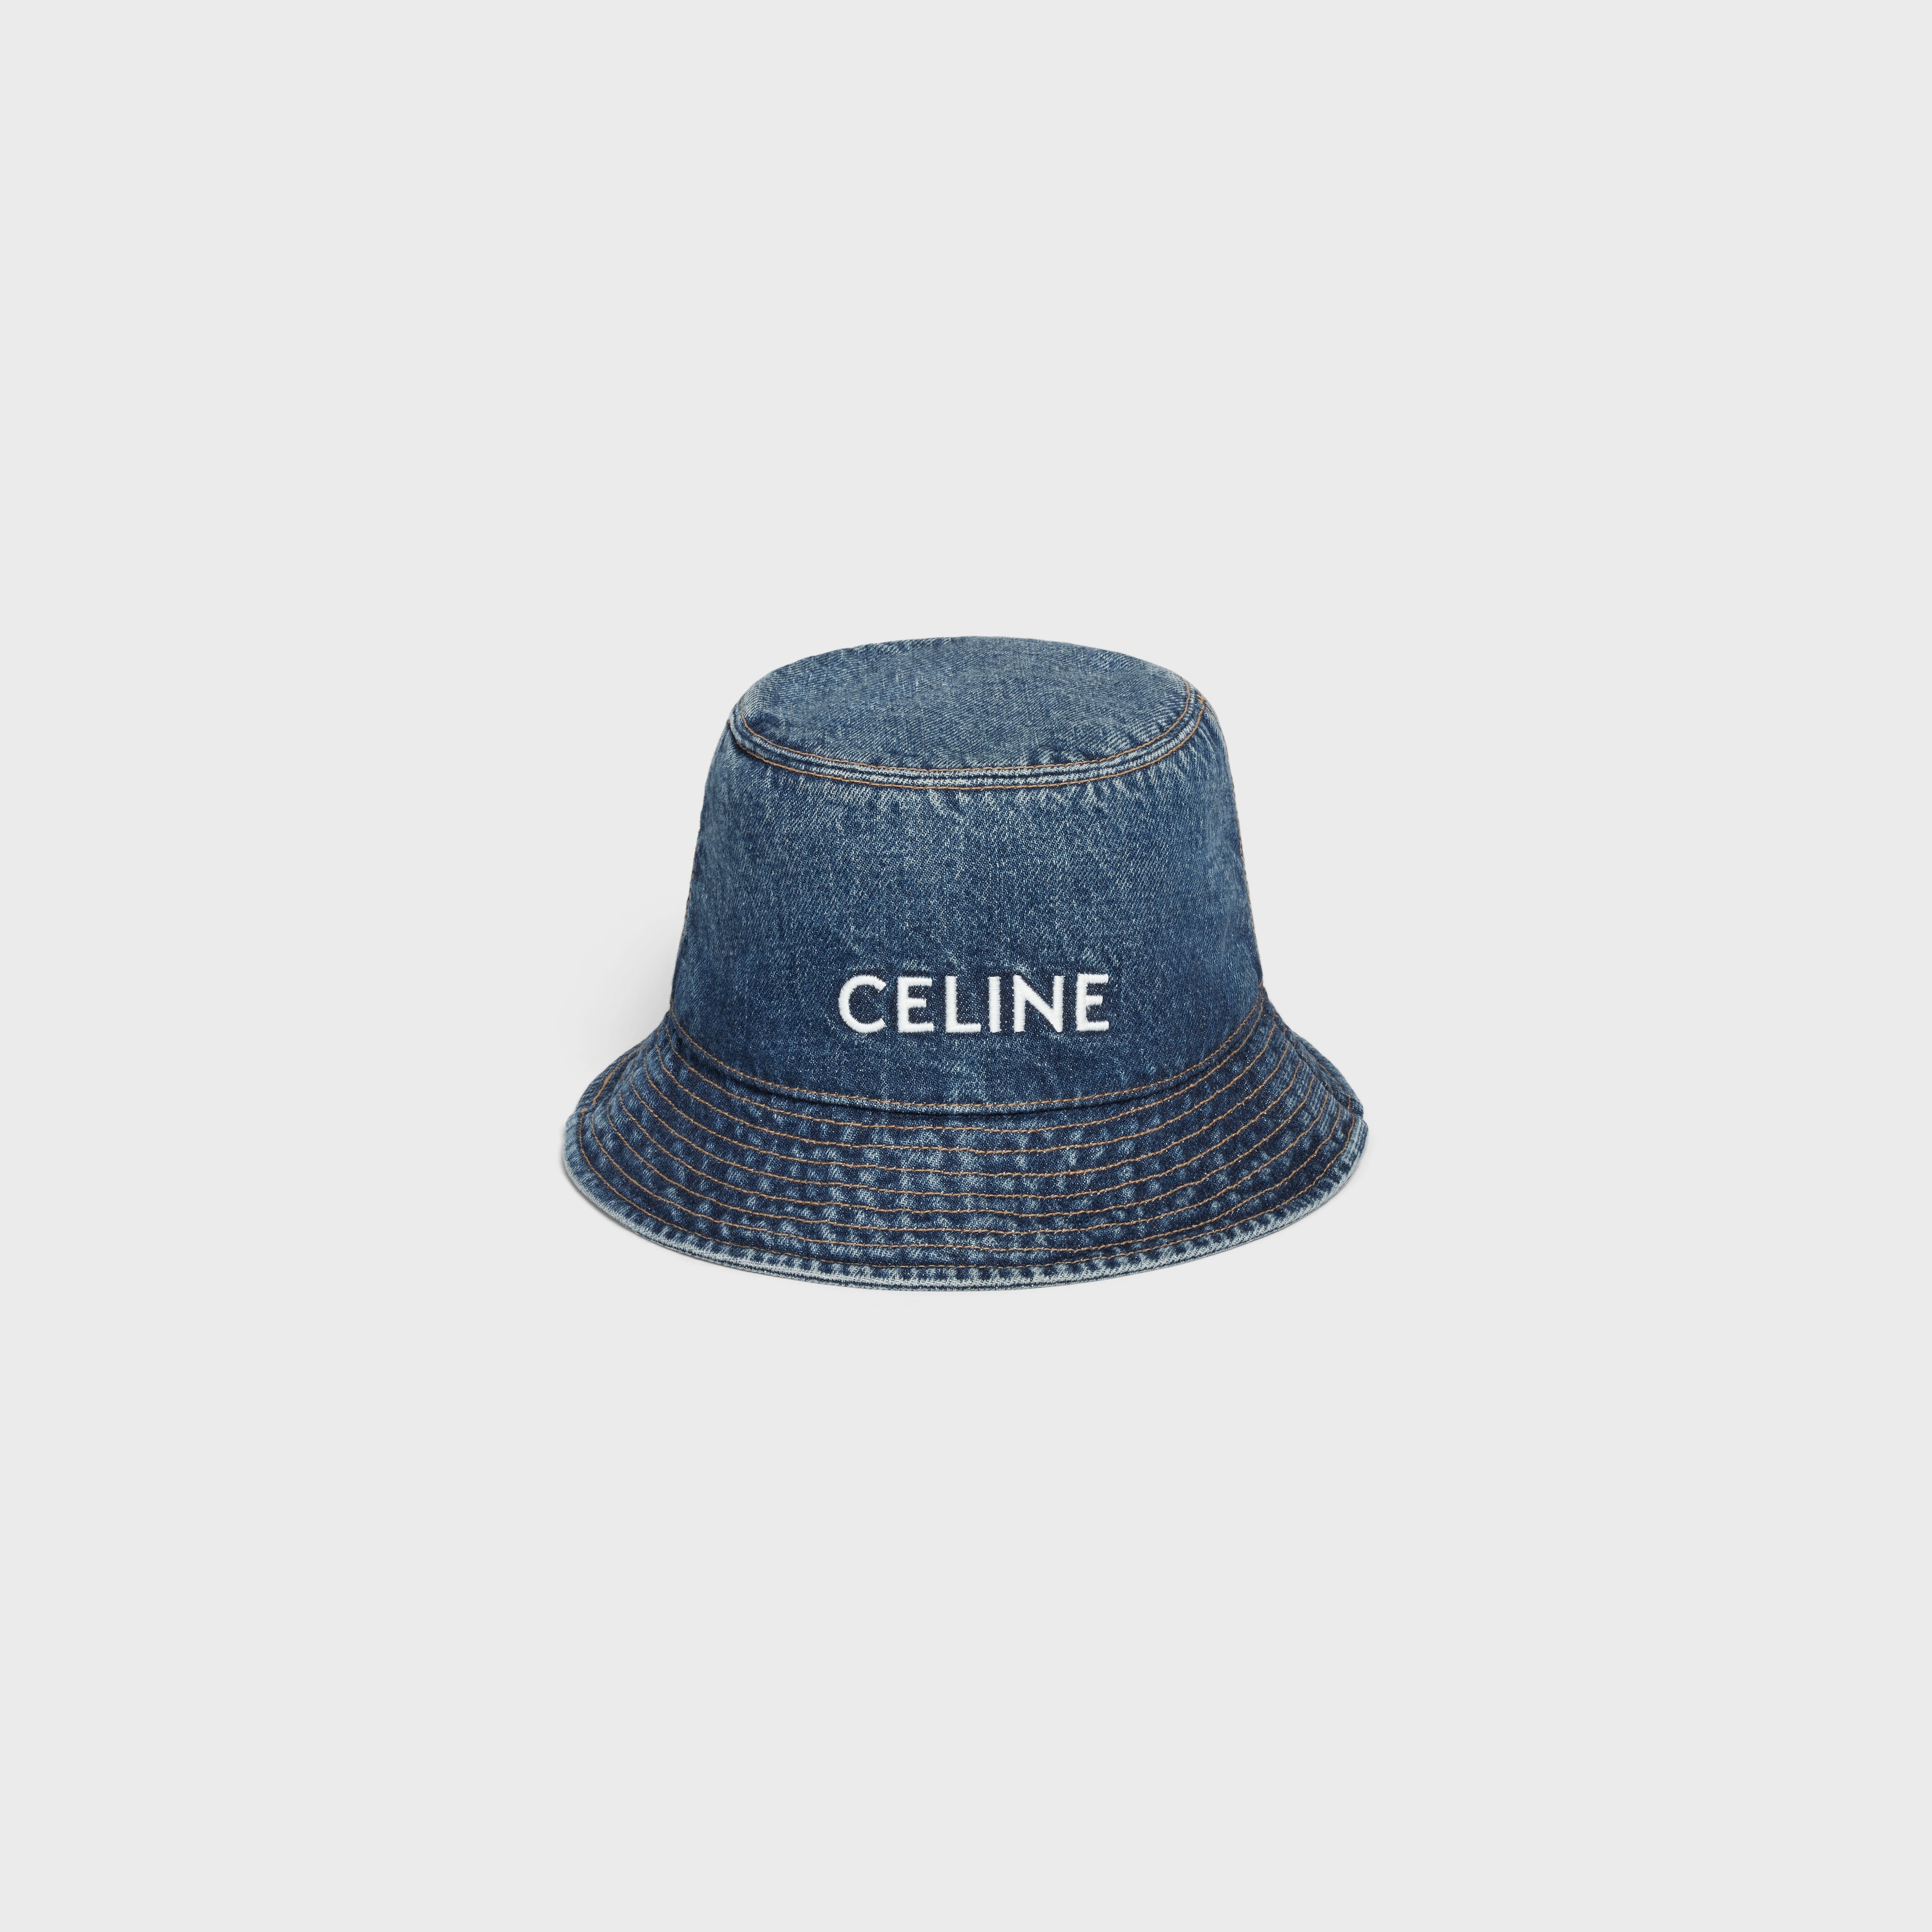 Celine embroidered union wash denim bucket hat - 1